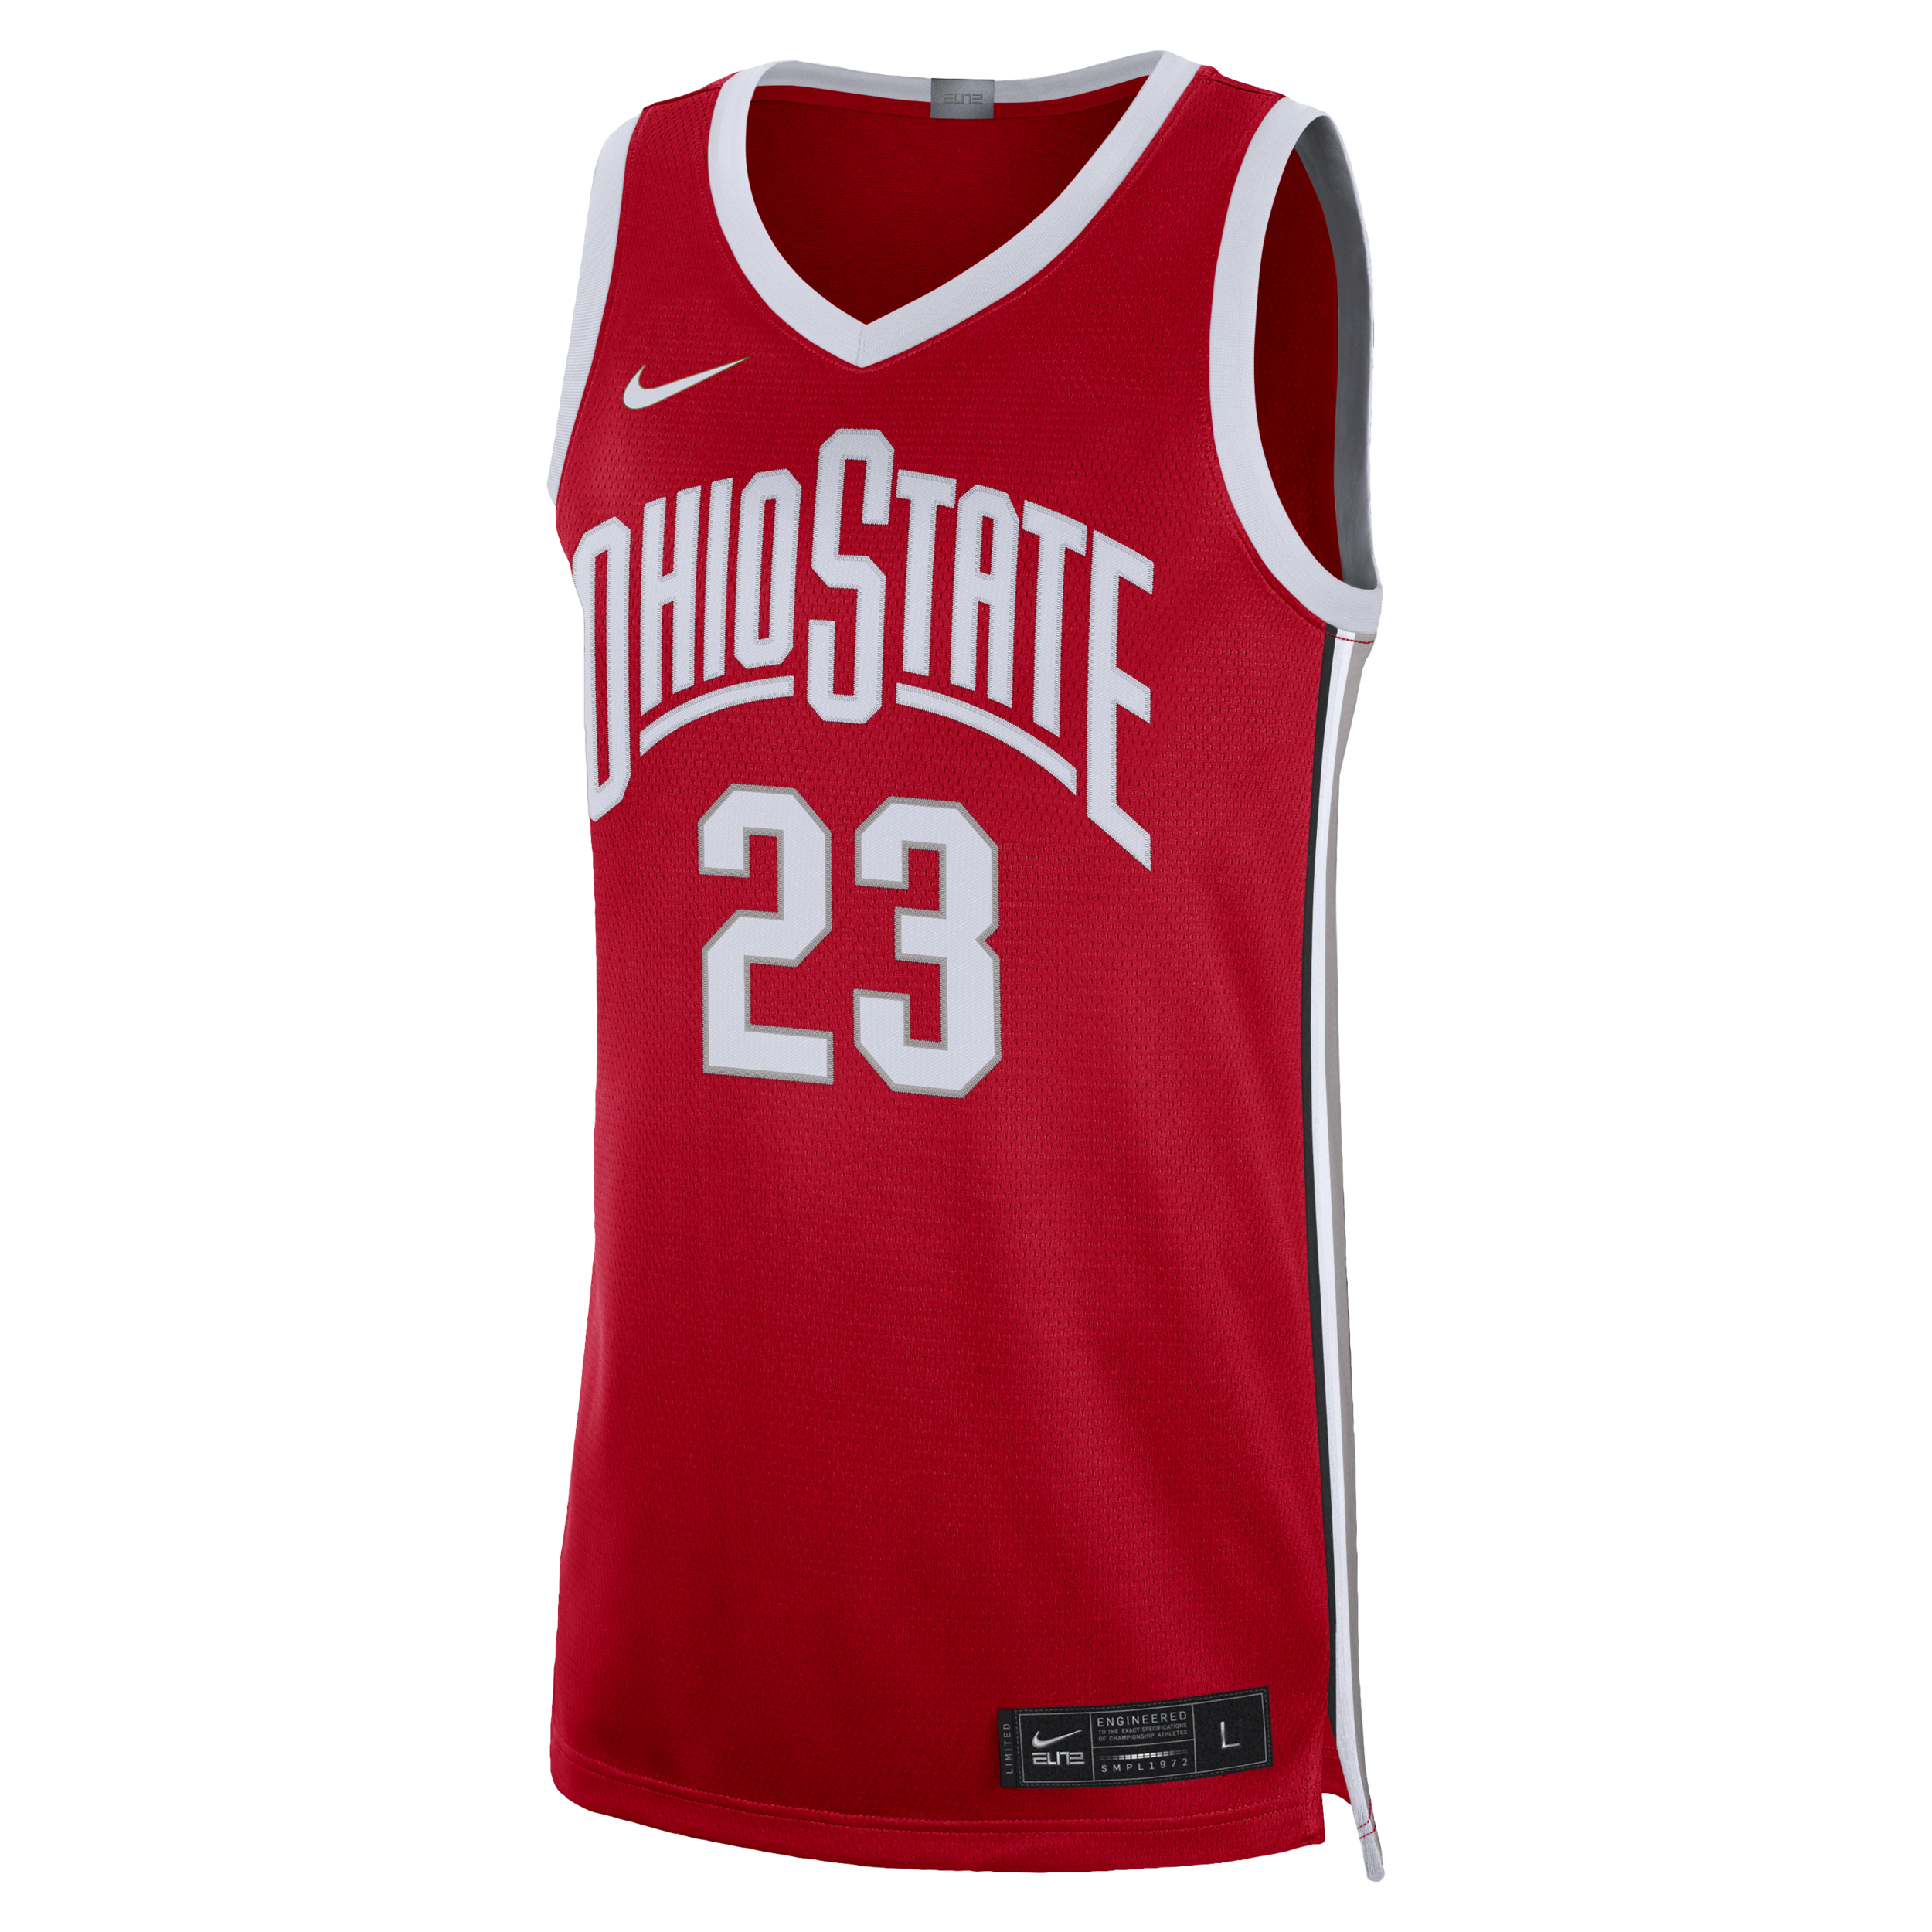 Ohio State Limited Camiseta de baloncesto Nike Dri-FIT College - Hombre - Rojo